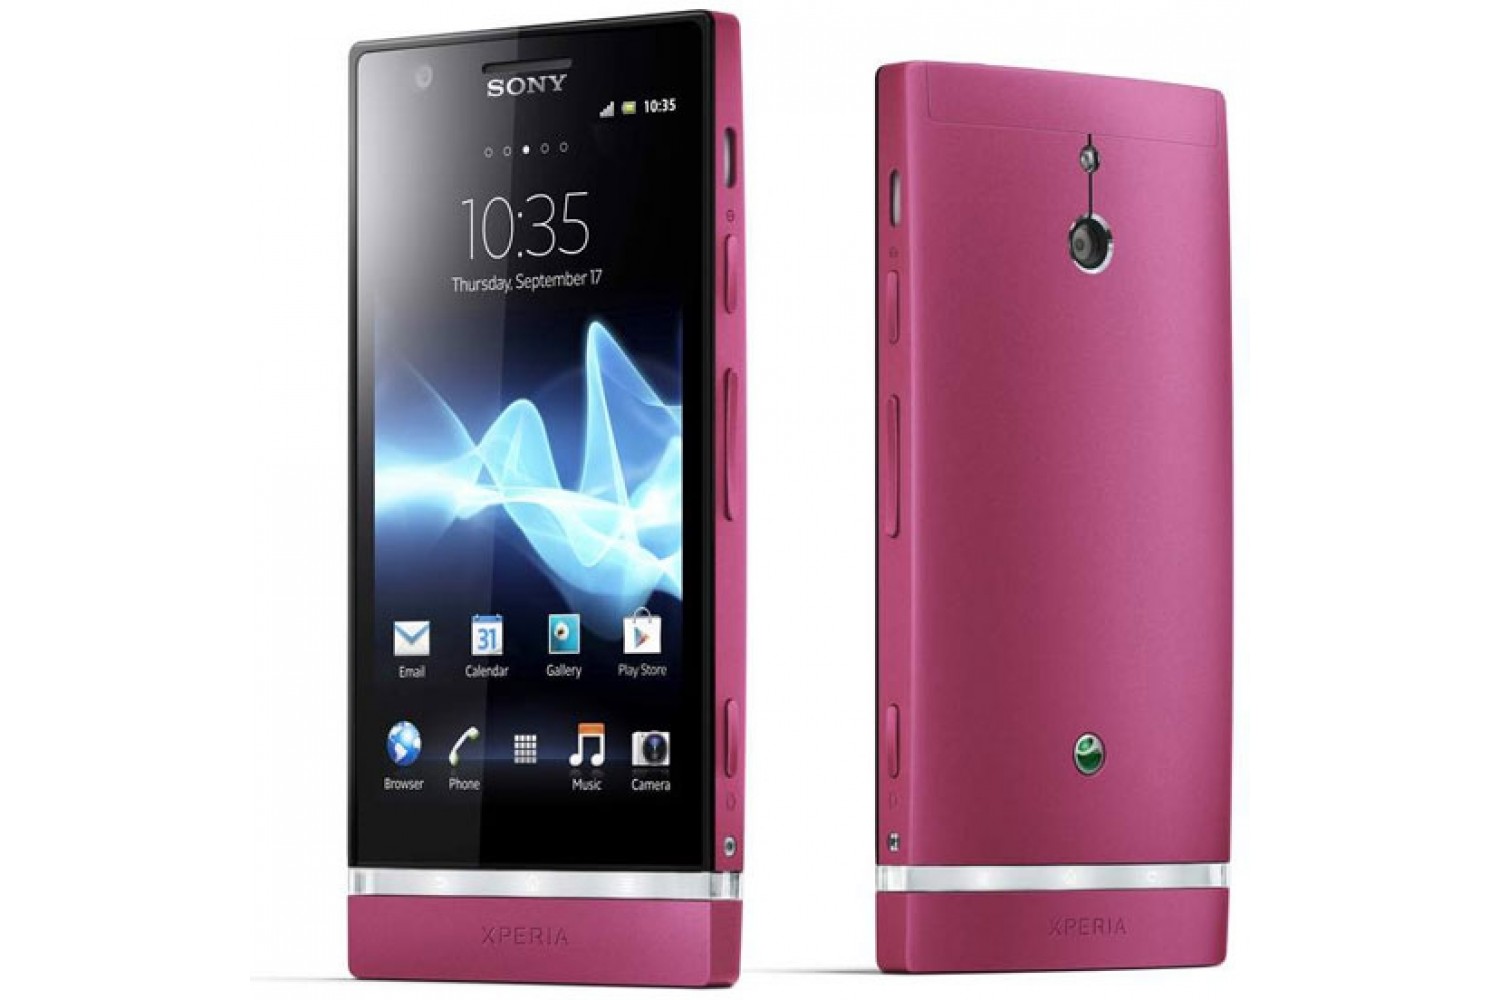 Sony xperia последняя. Смартфон Sony Xperia p. Sony Xperia lt22i. Sony Ericsson Xperia lt22i. Sony Xperia 2009.